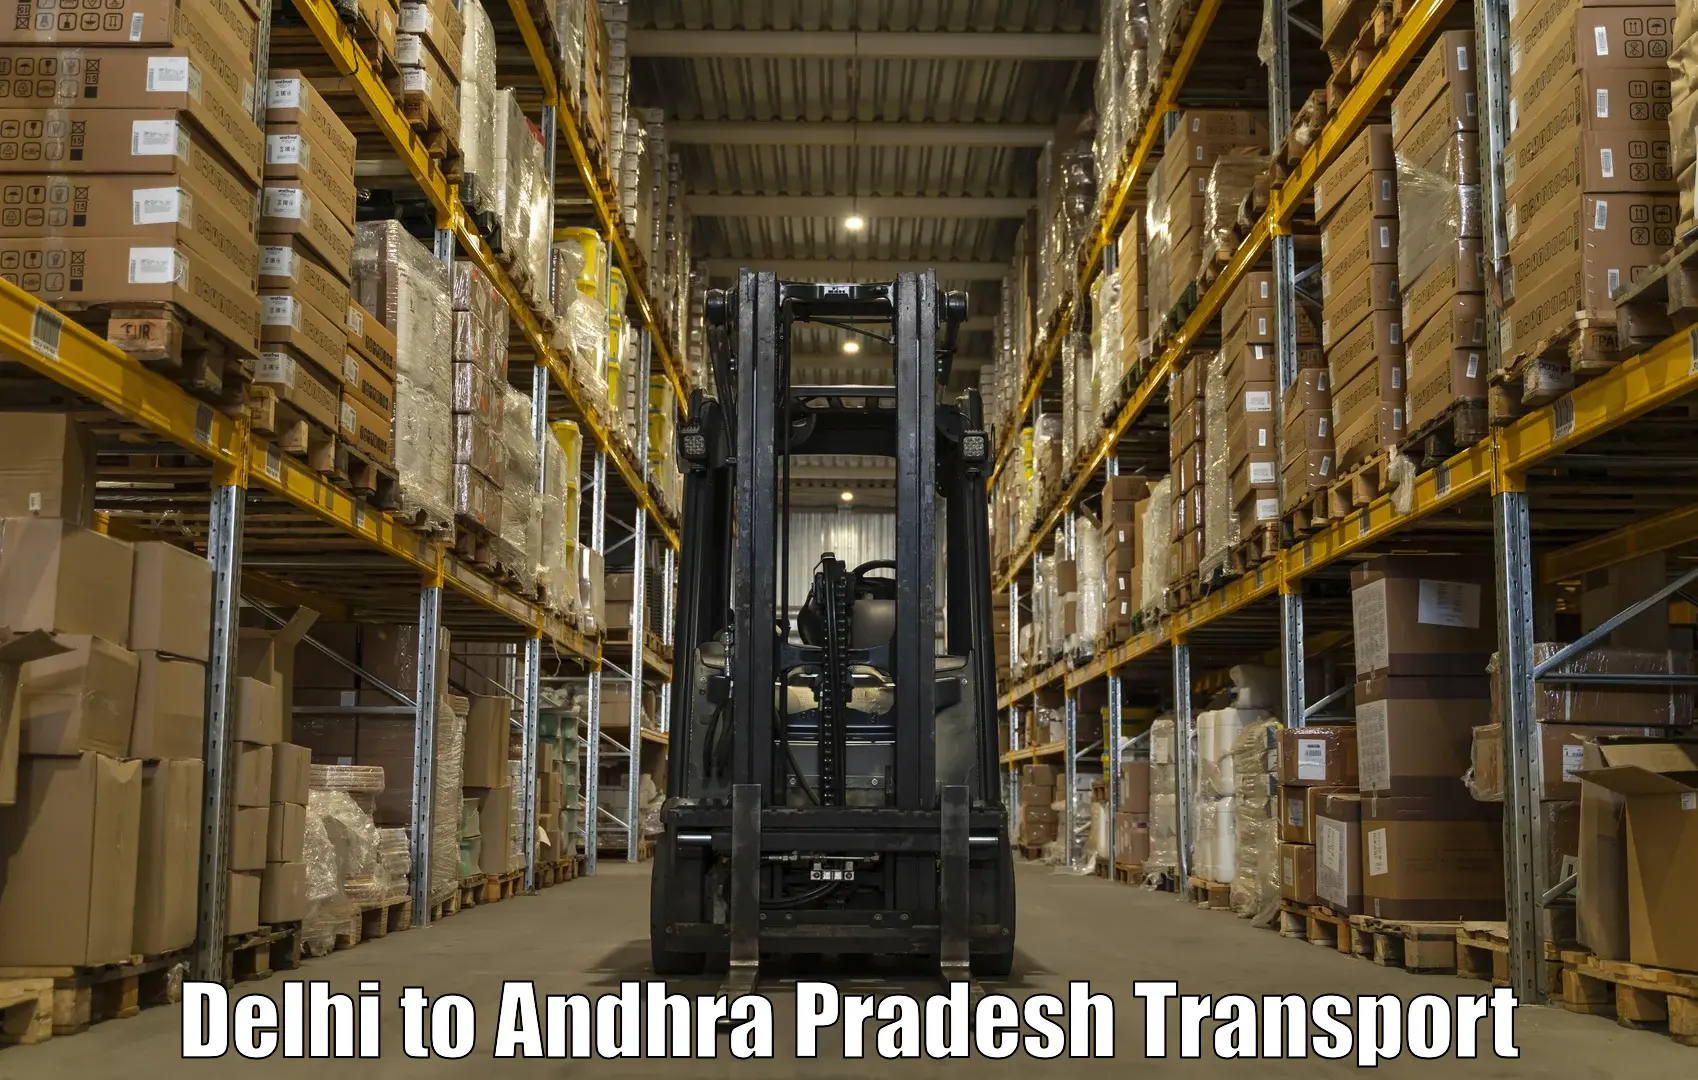 Land transport services Delhi to Ranastalam